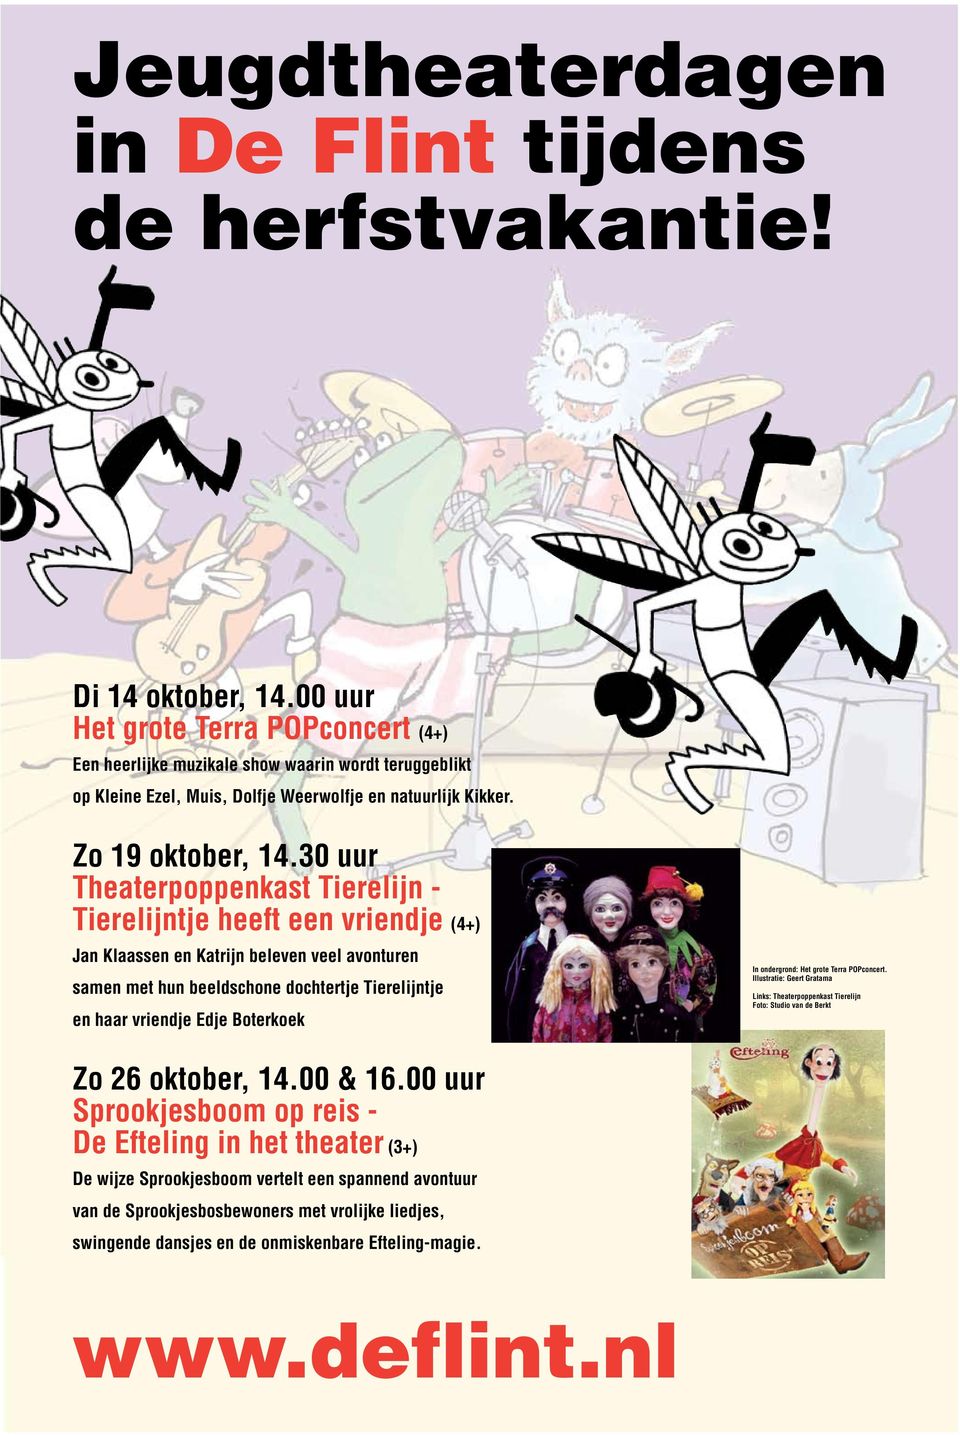 30 uur Theaterpoppenkast Tierelijn - Tierelijntje heeft een vriendje (4+) Jan Klaassen en Katrijn beleven veel avonturen samen met hun beeldschone dochtertje Tierelijntje en haar vriendje Edje